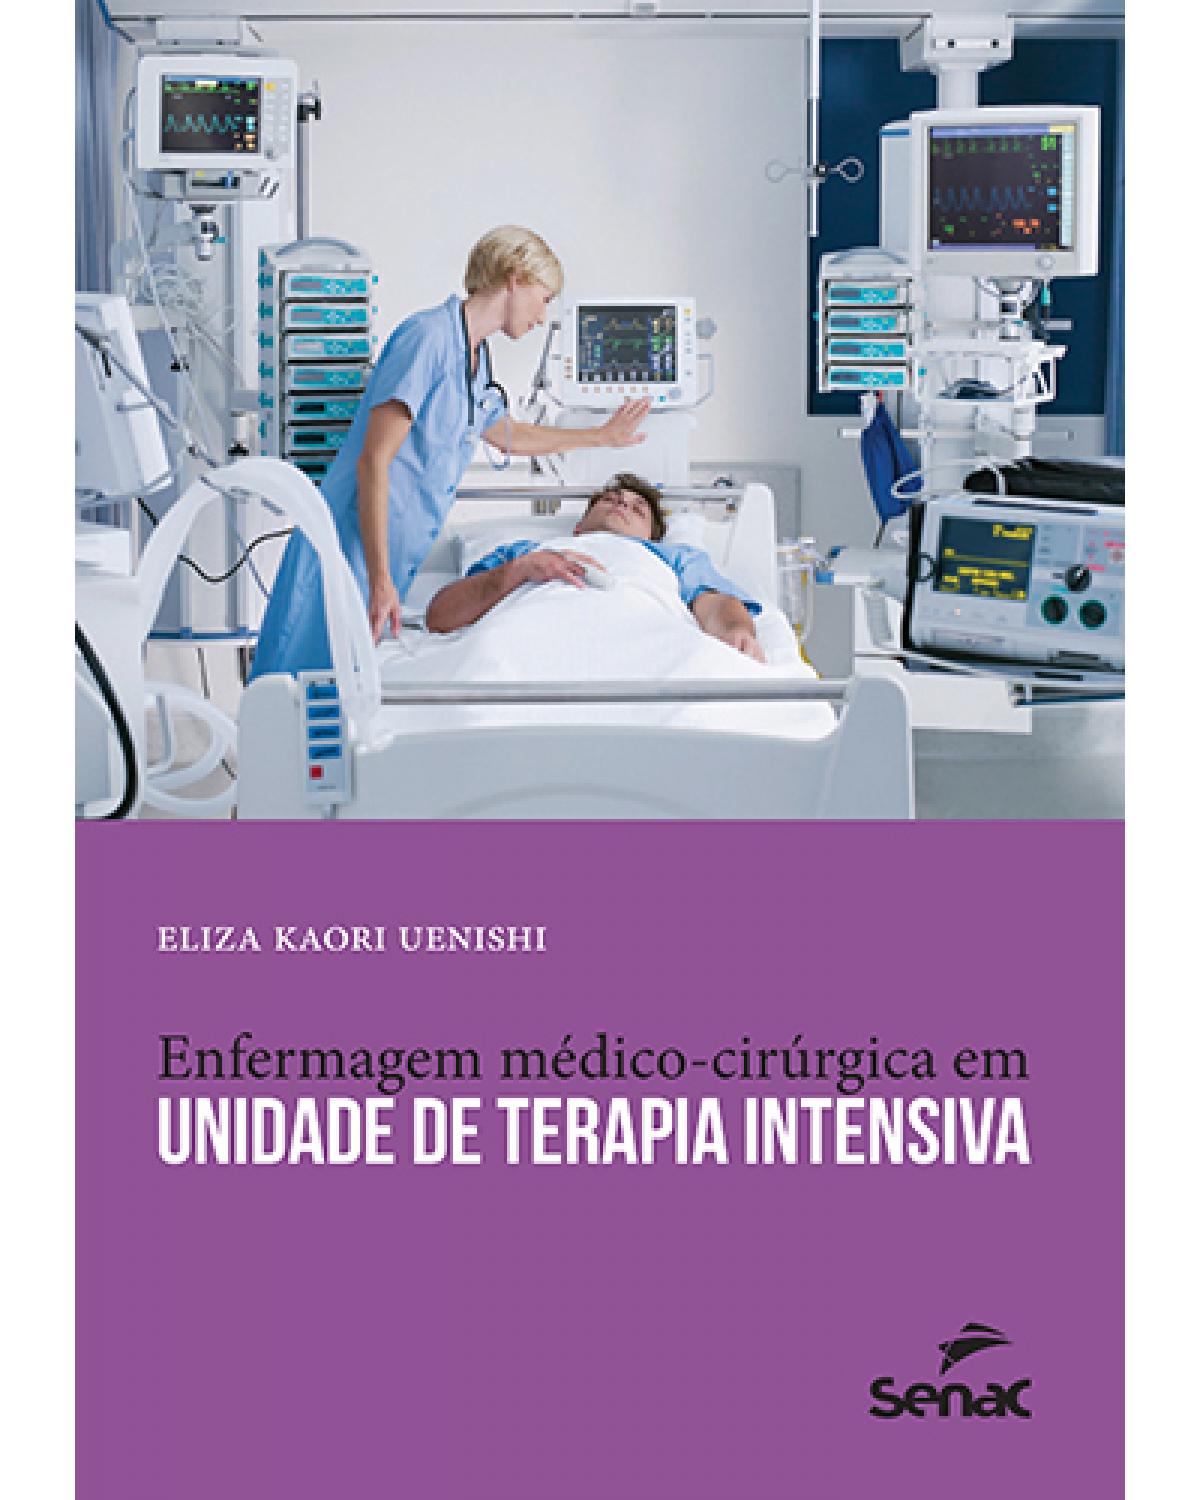 Enfermagem médico-cirúrgica em unidade de terapia intensiva - 11ª Edição